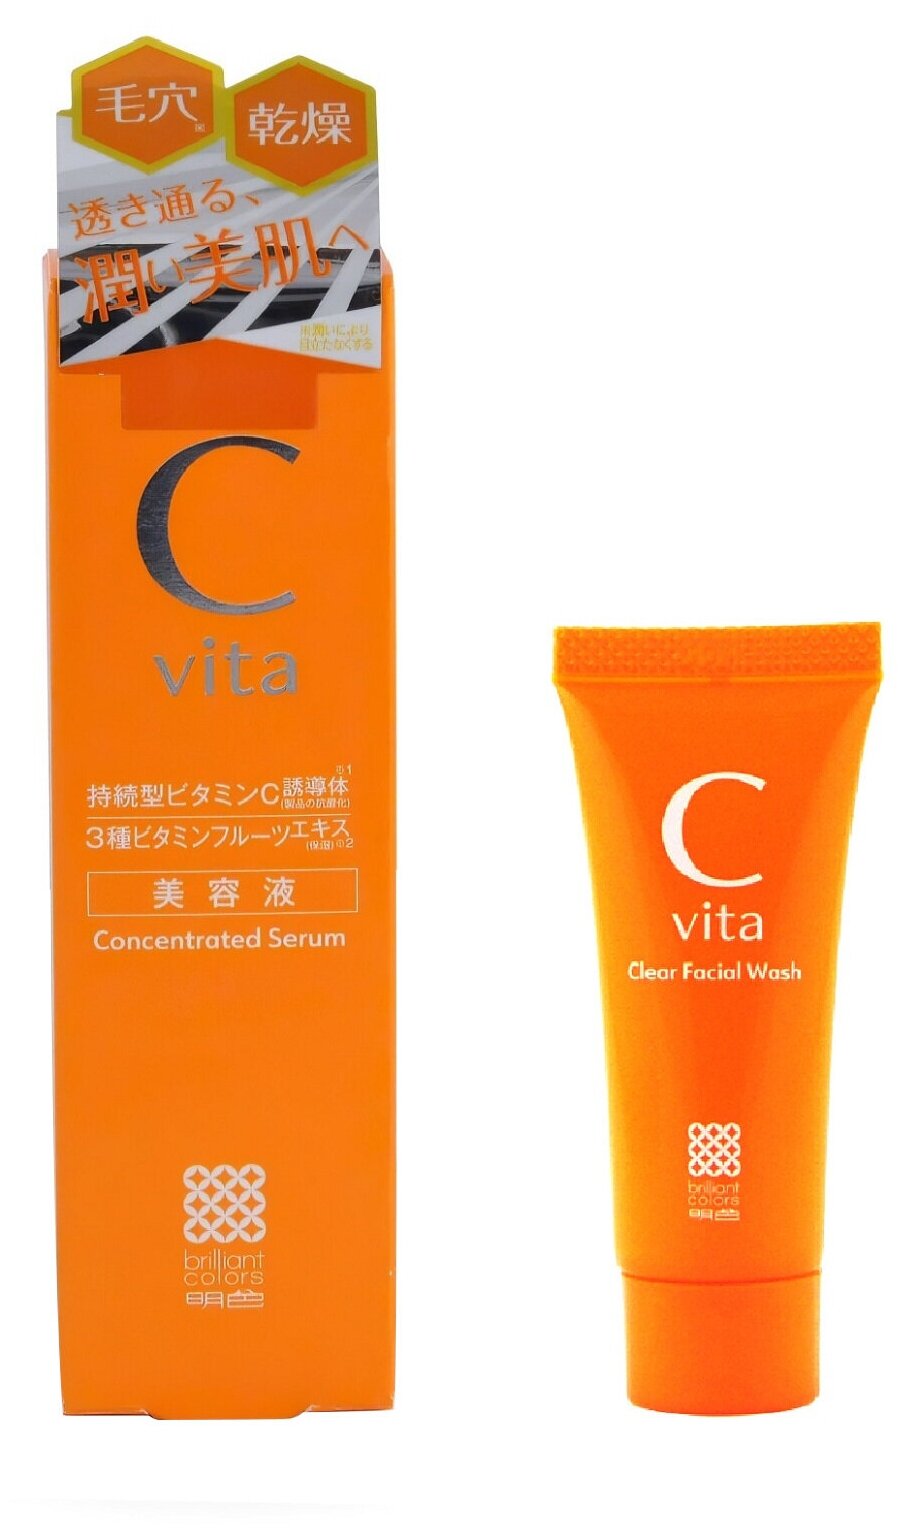 Meishoku Набор Cvita: Антиоксидантная концентрированная сыворотка с витамином С, 30 гр + Пенка для умывания с витамином С (мини), 15 гр, арт. 816035